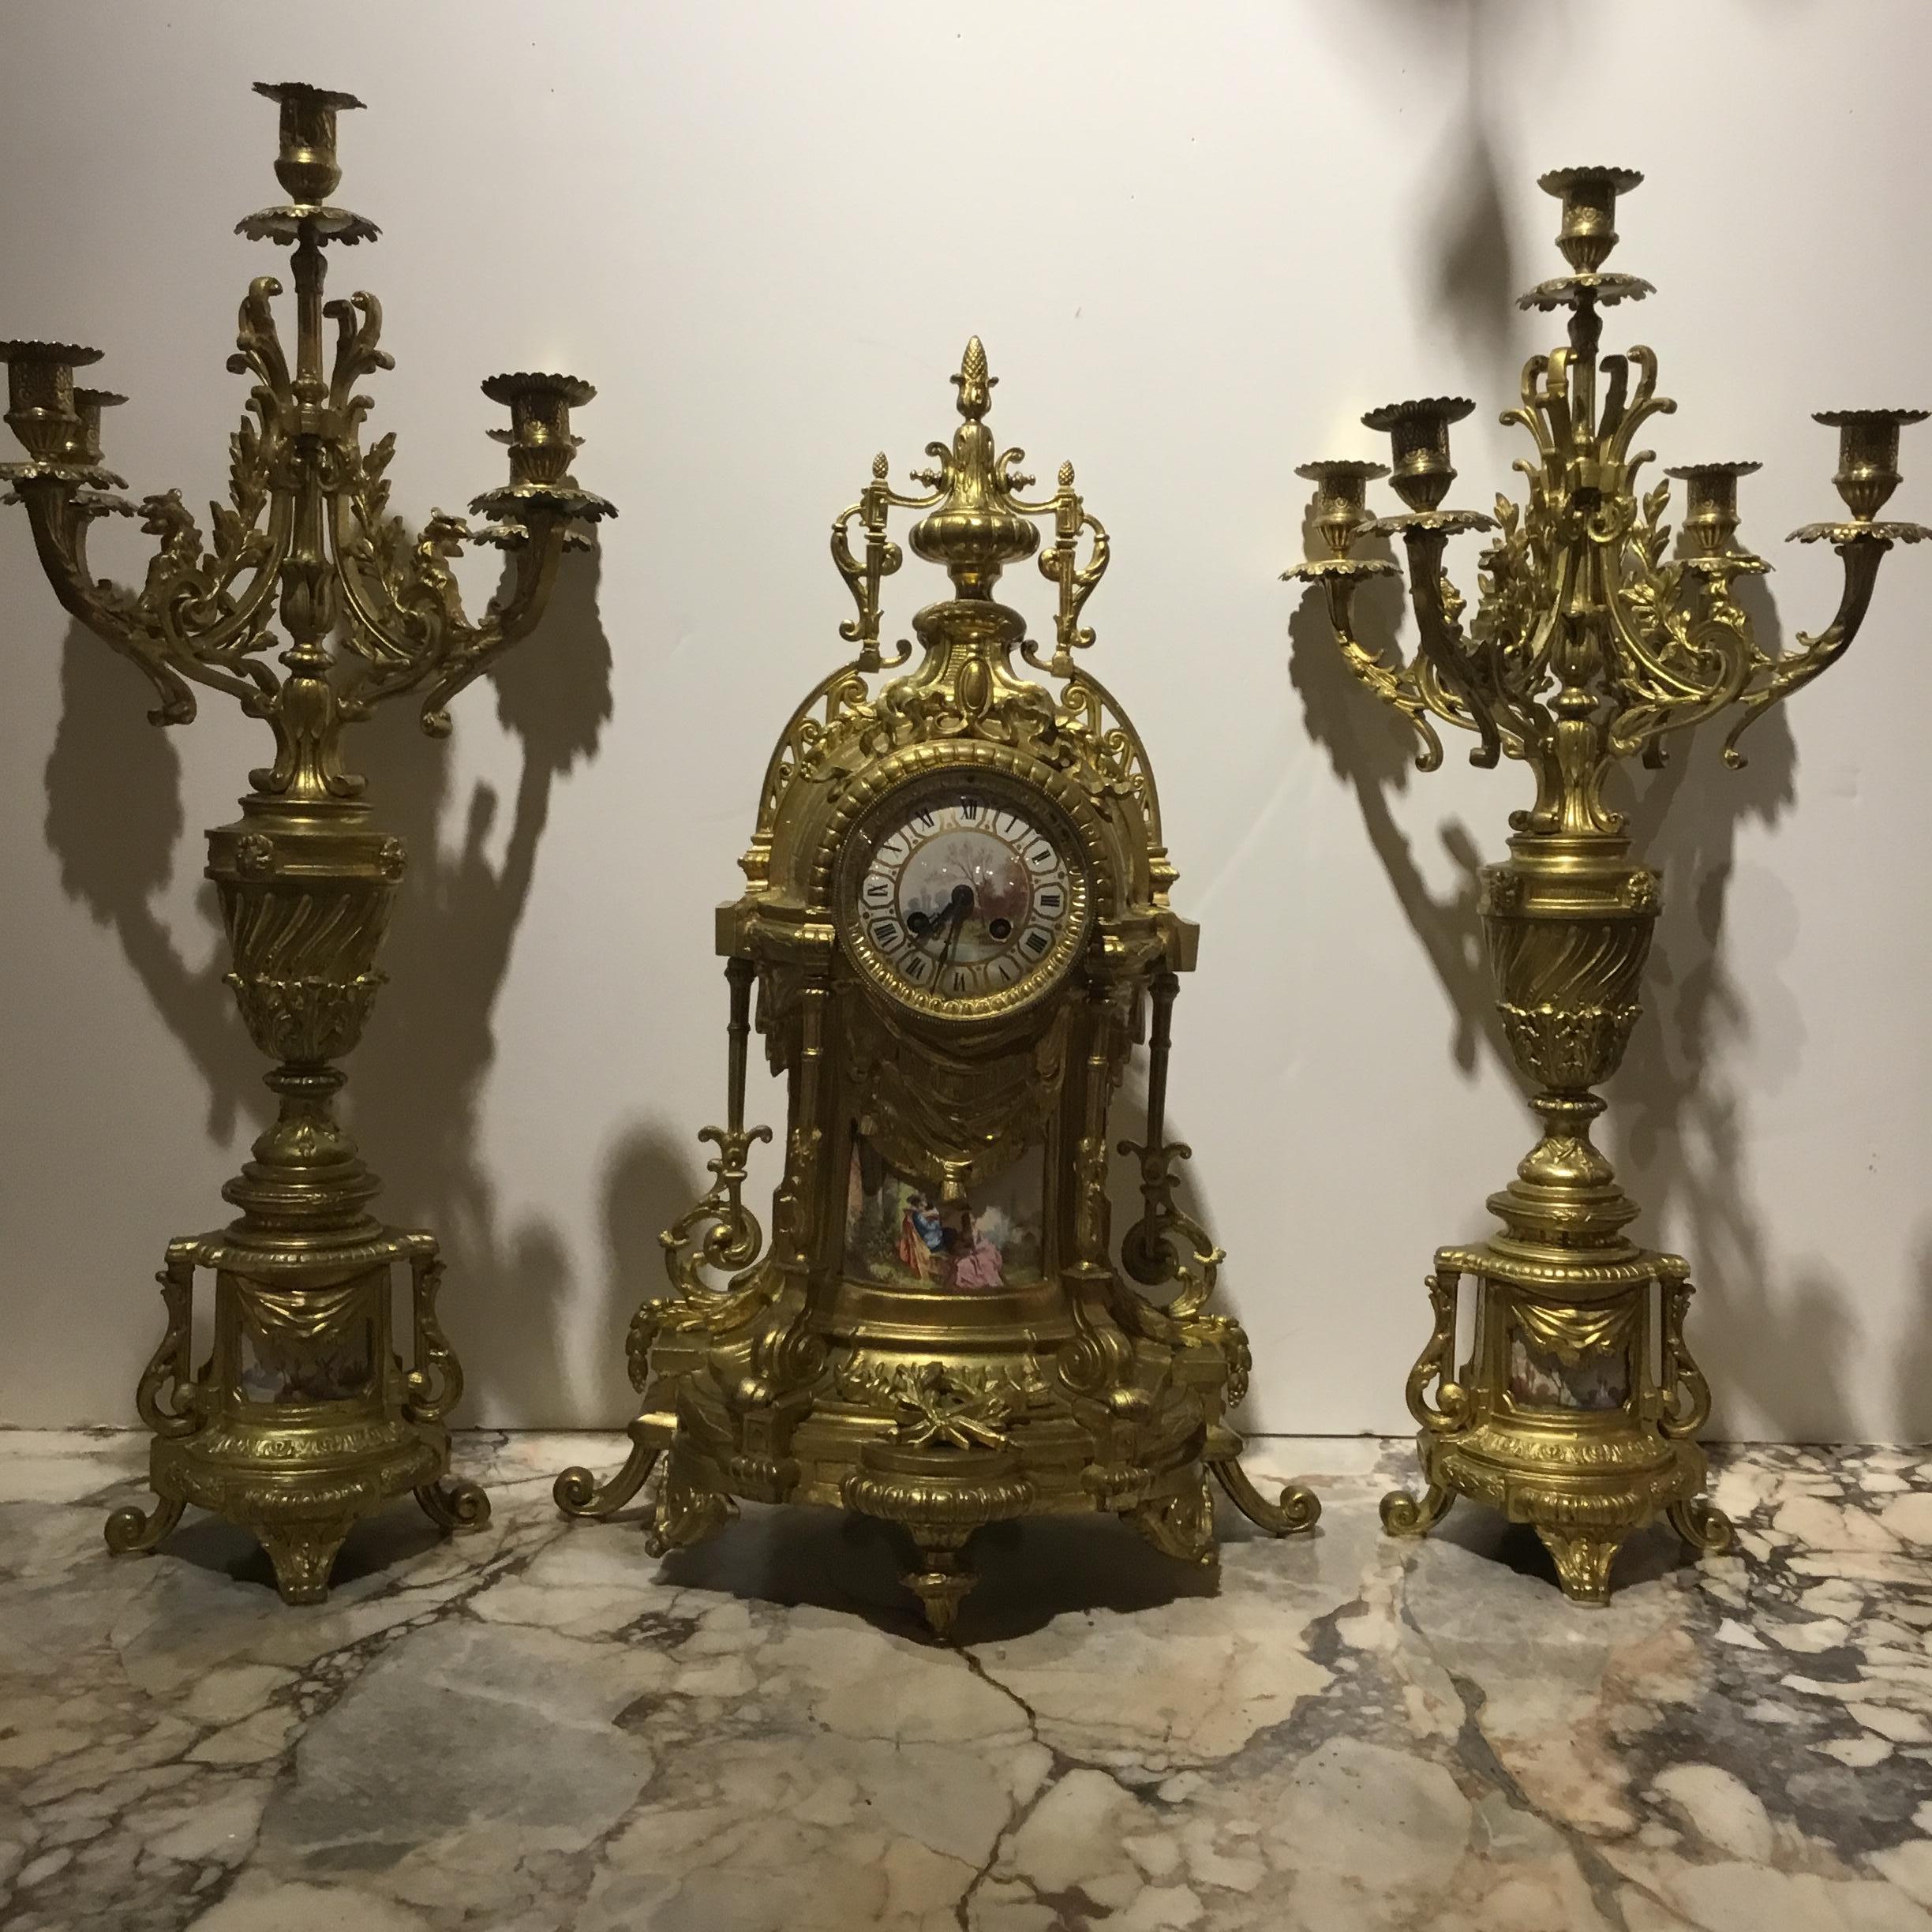 Garniture de style Louis XVI. La conception de la torche et du carquois est  centré sur 
Le bas de l'horloge. Une scène de jardin peinte à la main est présentée au
La partie inférieure de l'horloge et un magnifique visage peint à la main